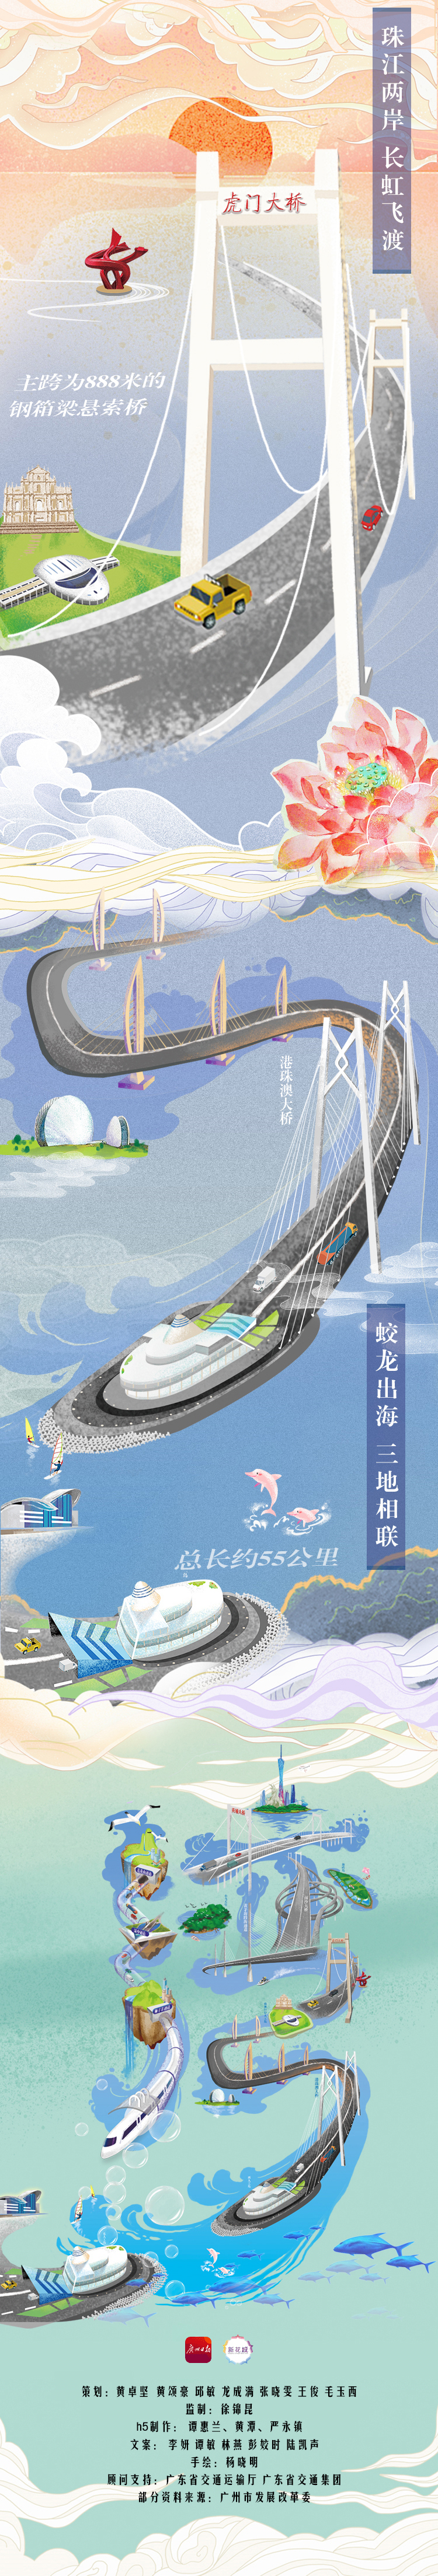 深中通道成就"珠中江"经济圈, 港珠澳大桥则飞架三地,打通"9 2"